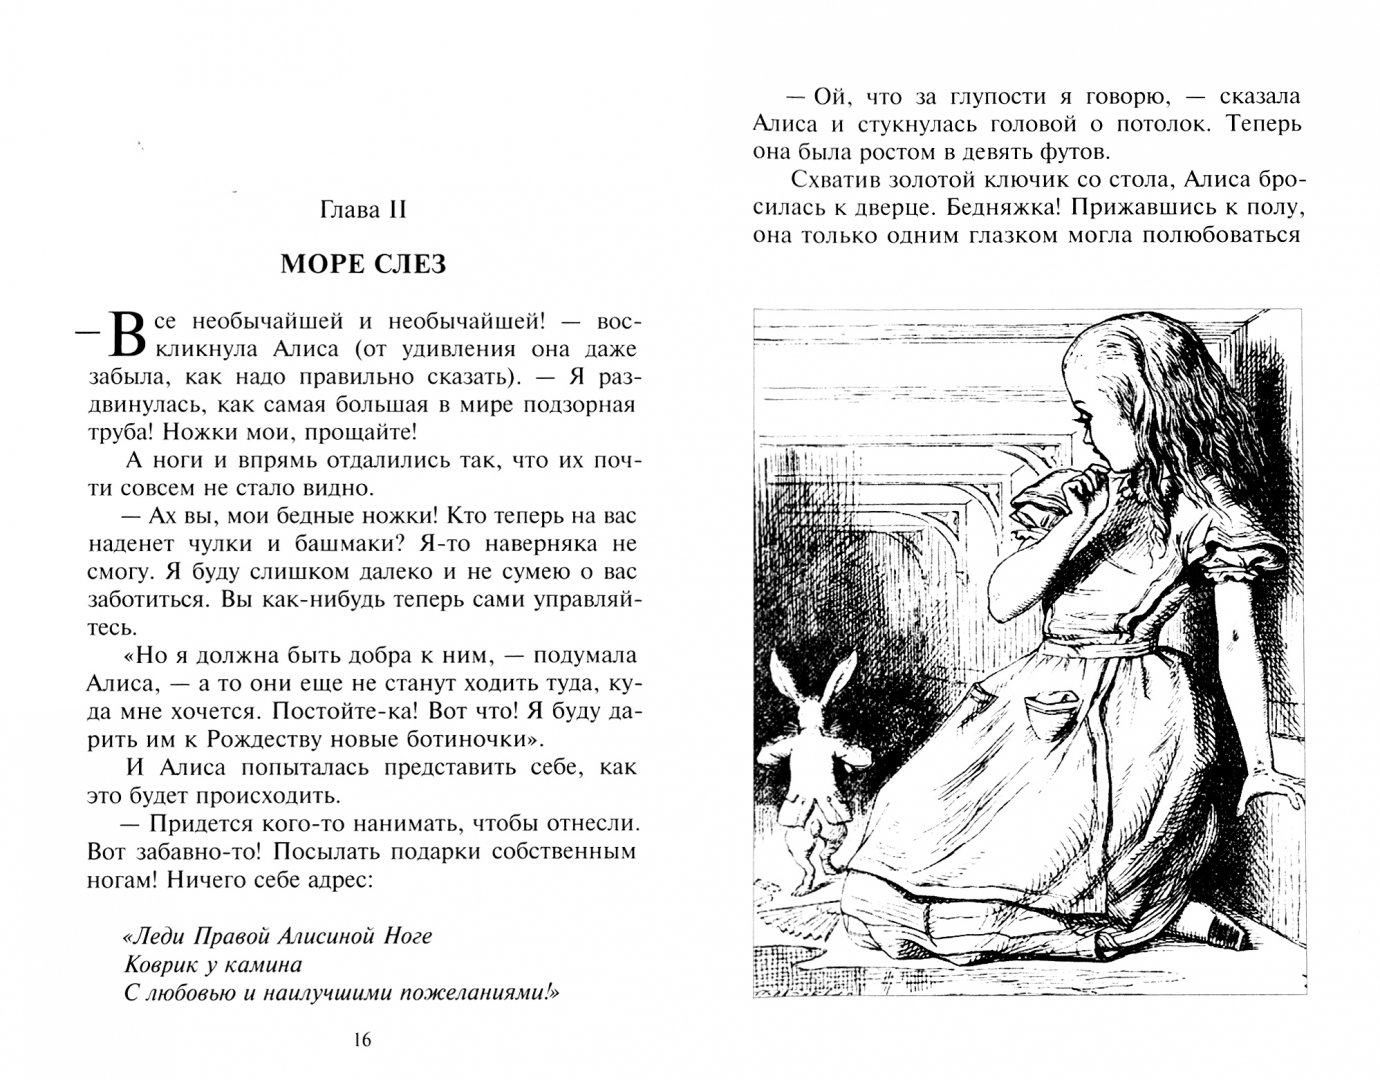 Алиса в стране чудес 10 глава. Алиса в стране чудес страницы из книги. Алиса в стране чудес отрывок из книги. Кэрролл Льюис "Алиса в стране чудес". Читать Алиса в стране чудес на русском первая глава.